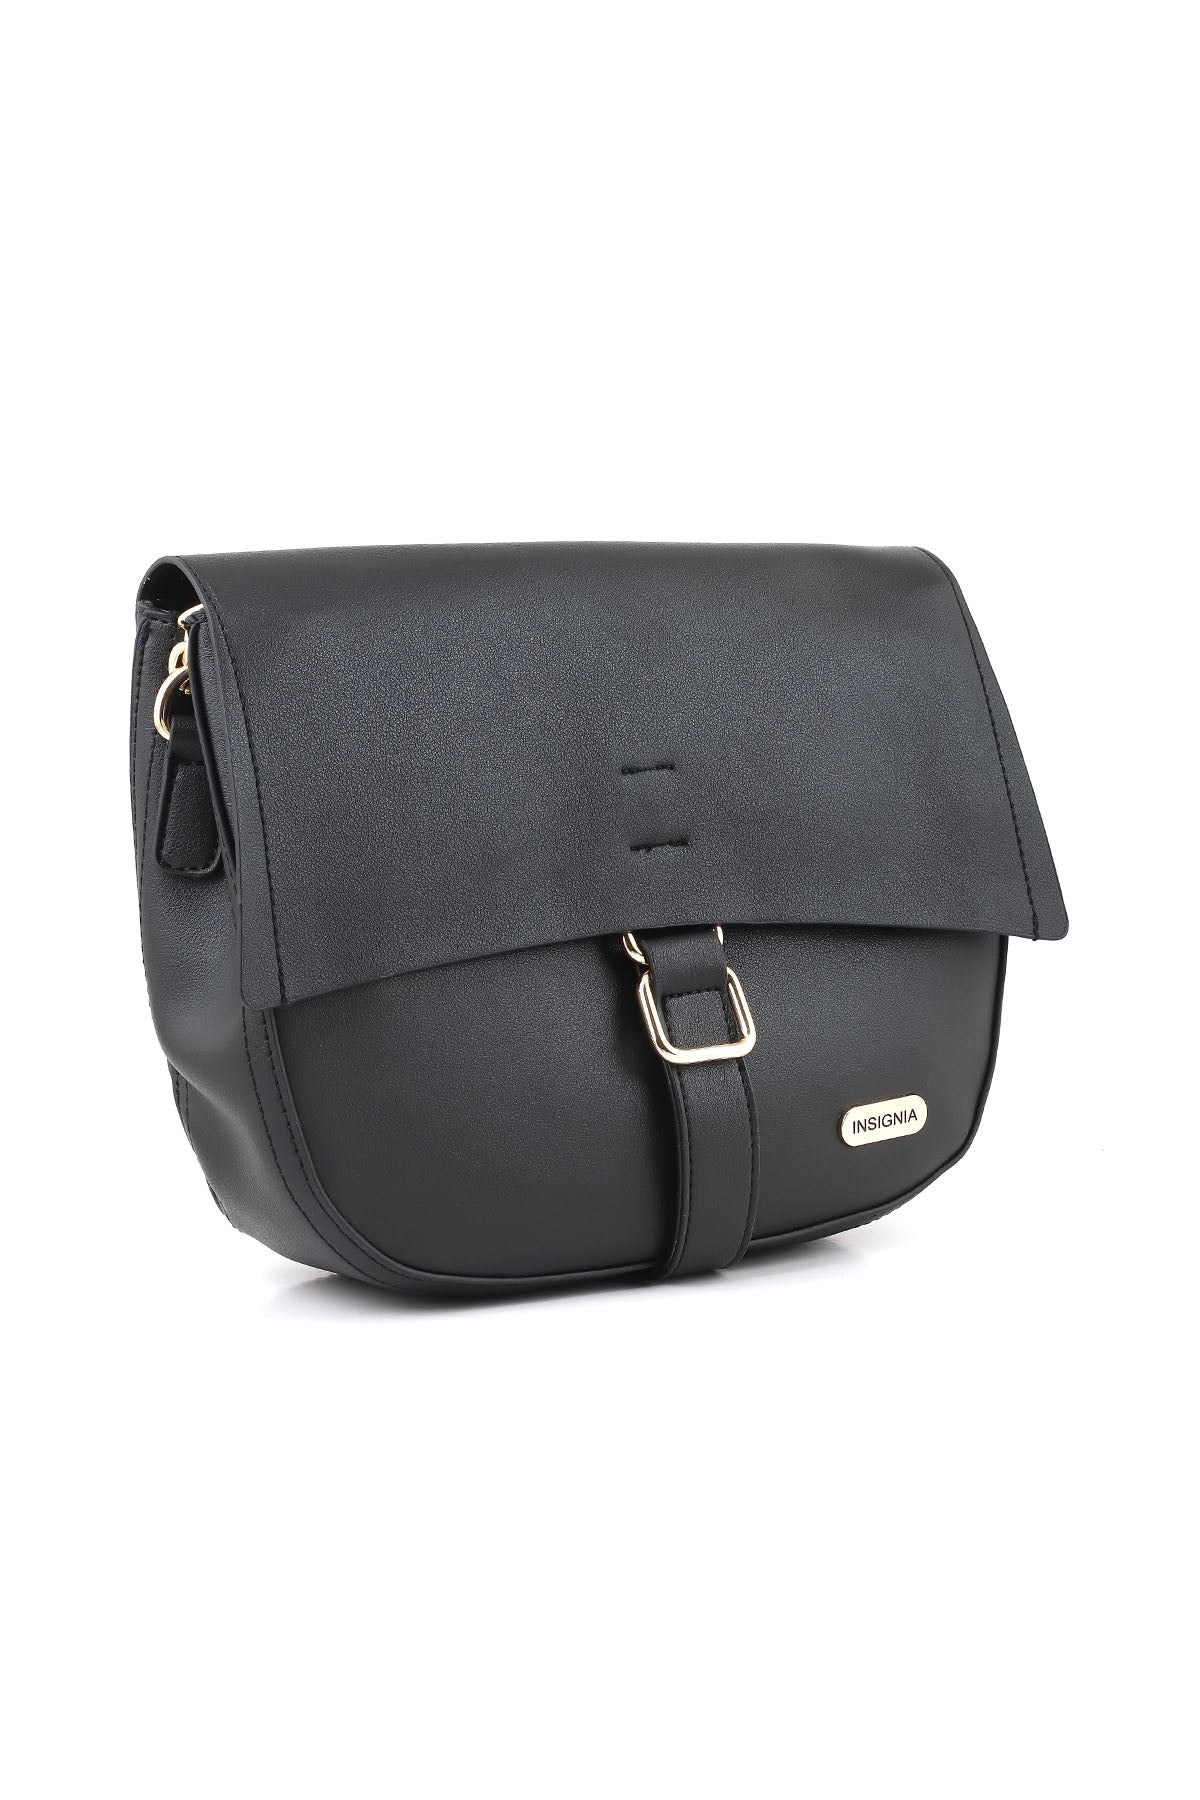 Cross Shoulder Bags B15065-Black